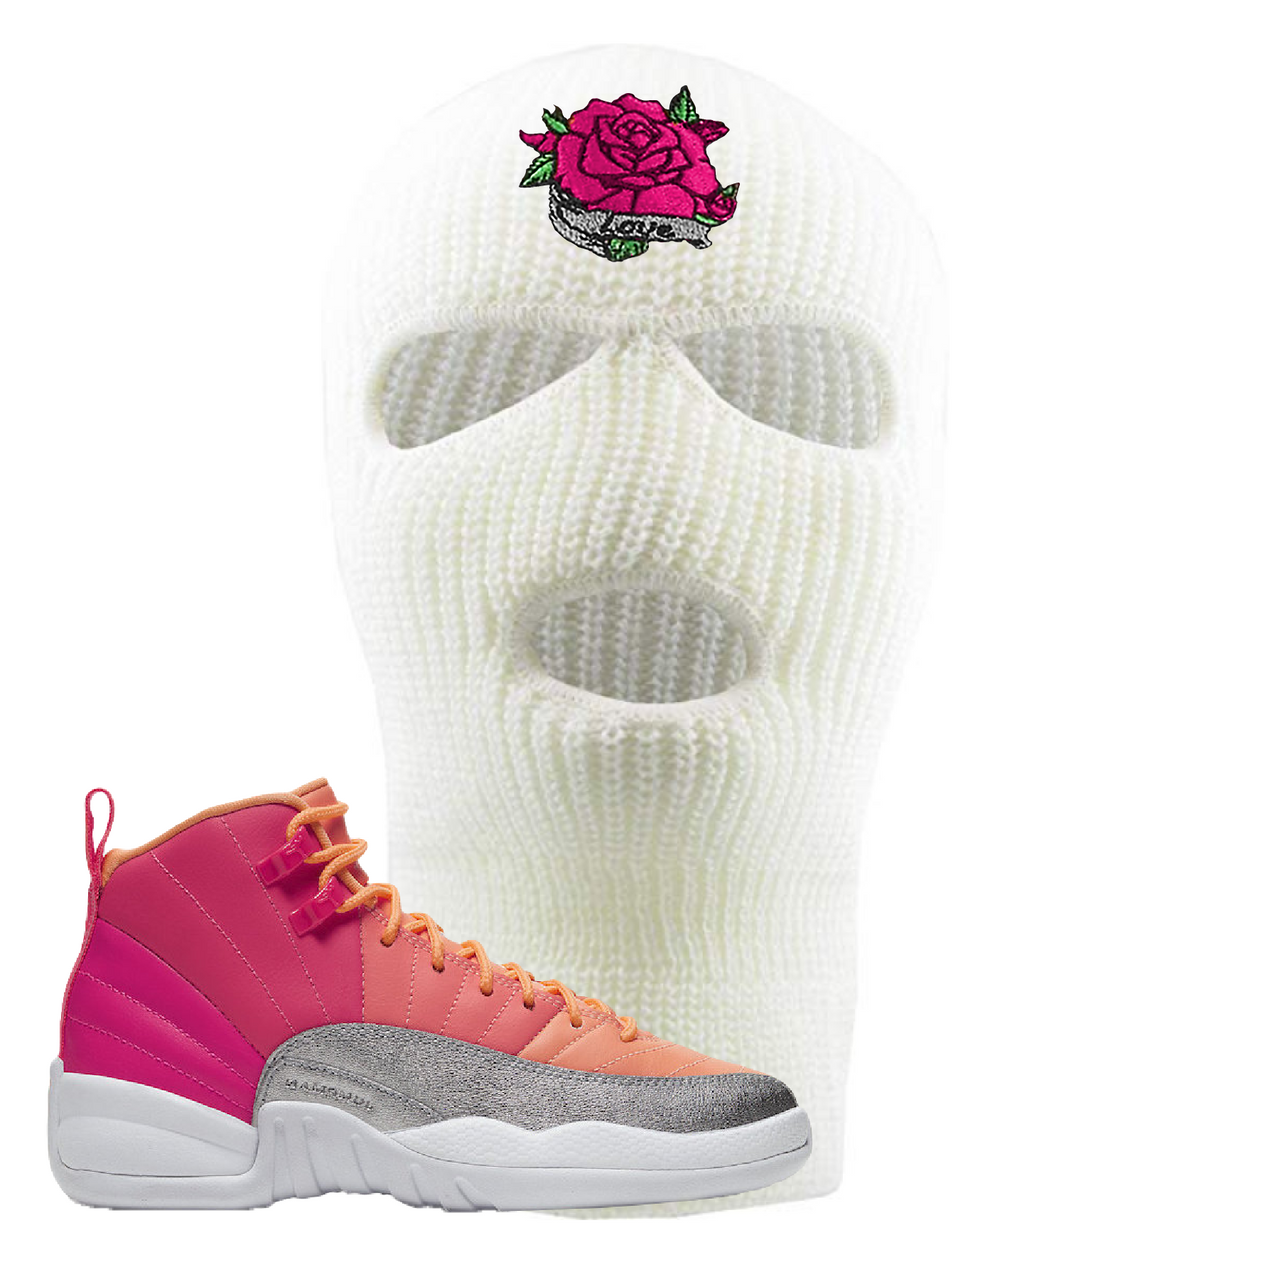 Air Jordan 12 GS Hot Punch Rose Love White Sneaker Matching Ski Mask